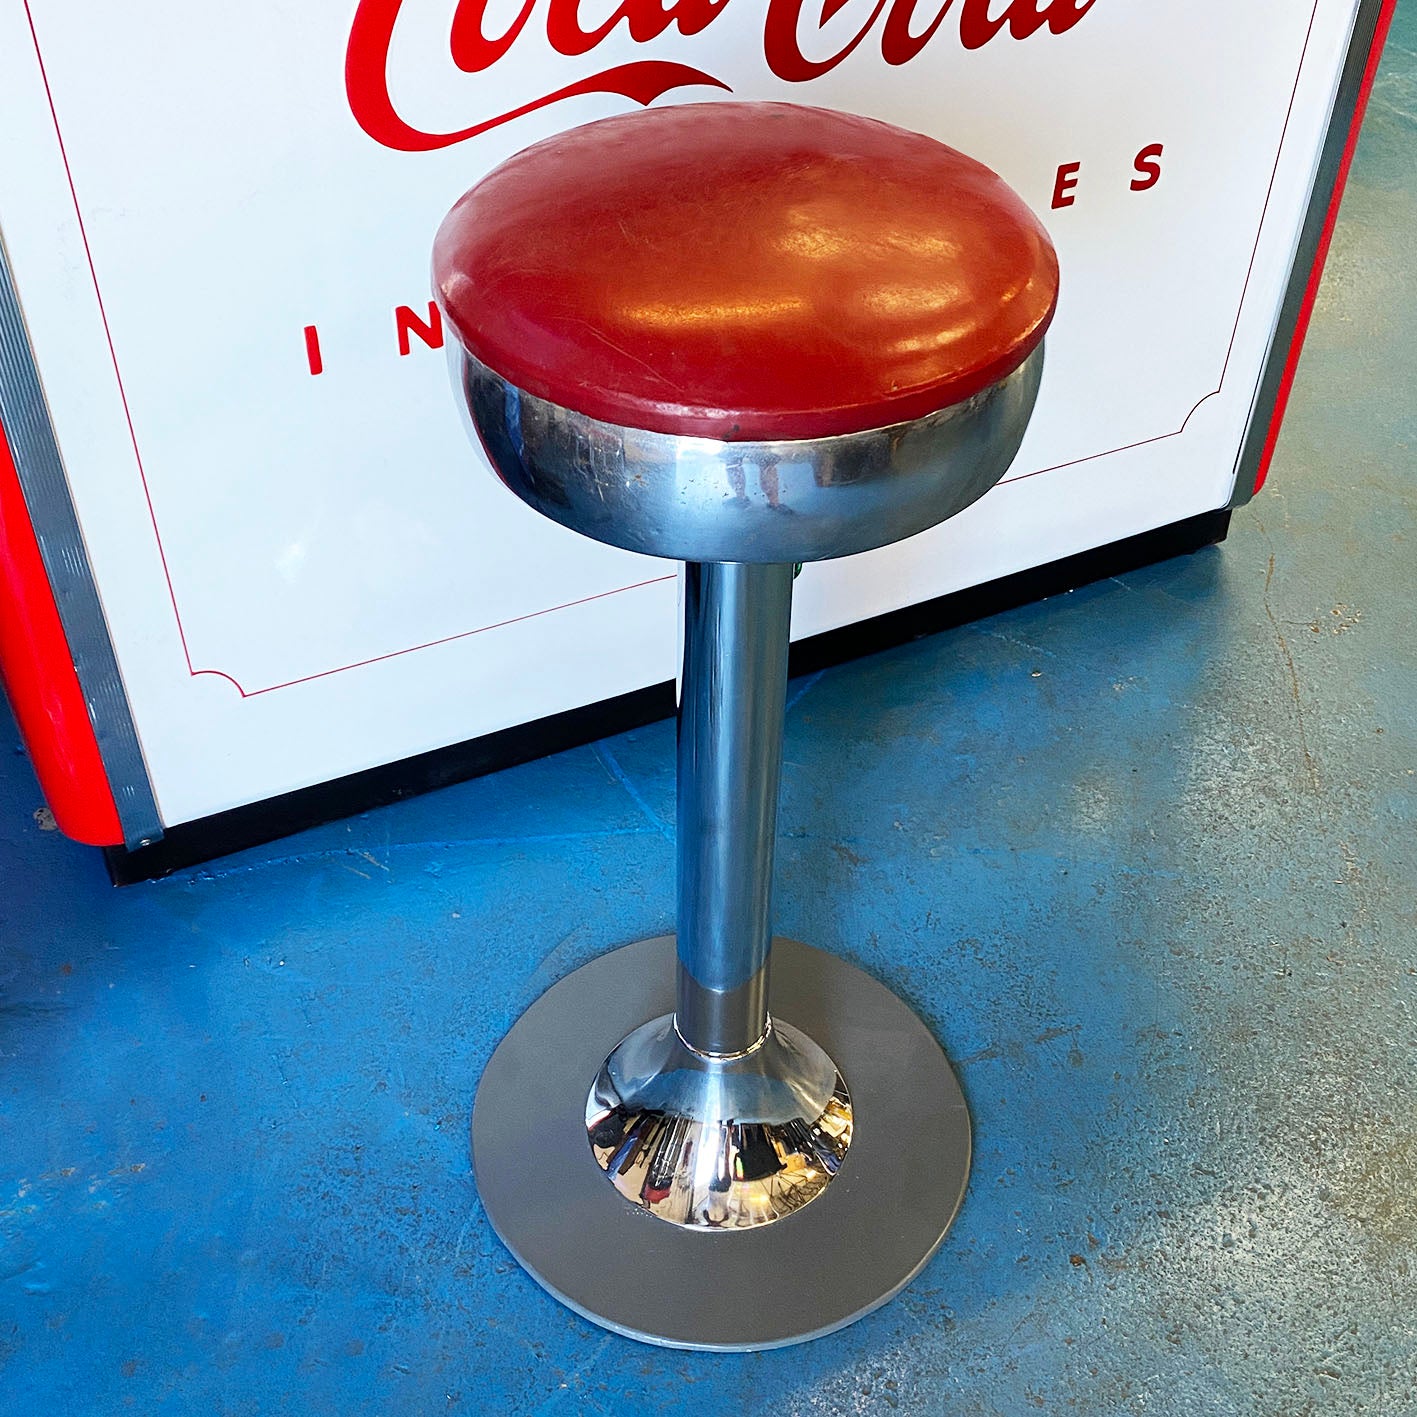 Original vintage 1950s Coca Cola Stool